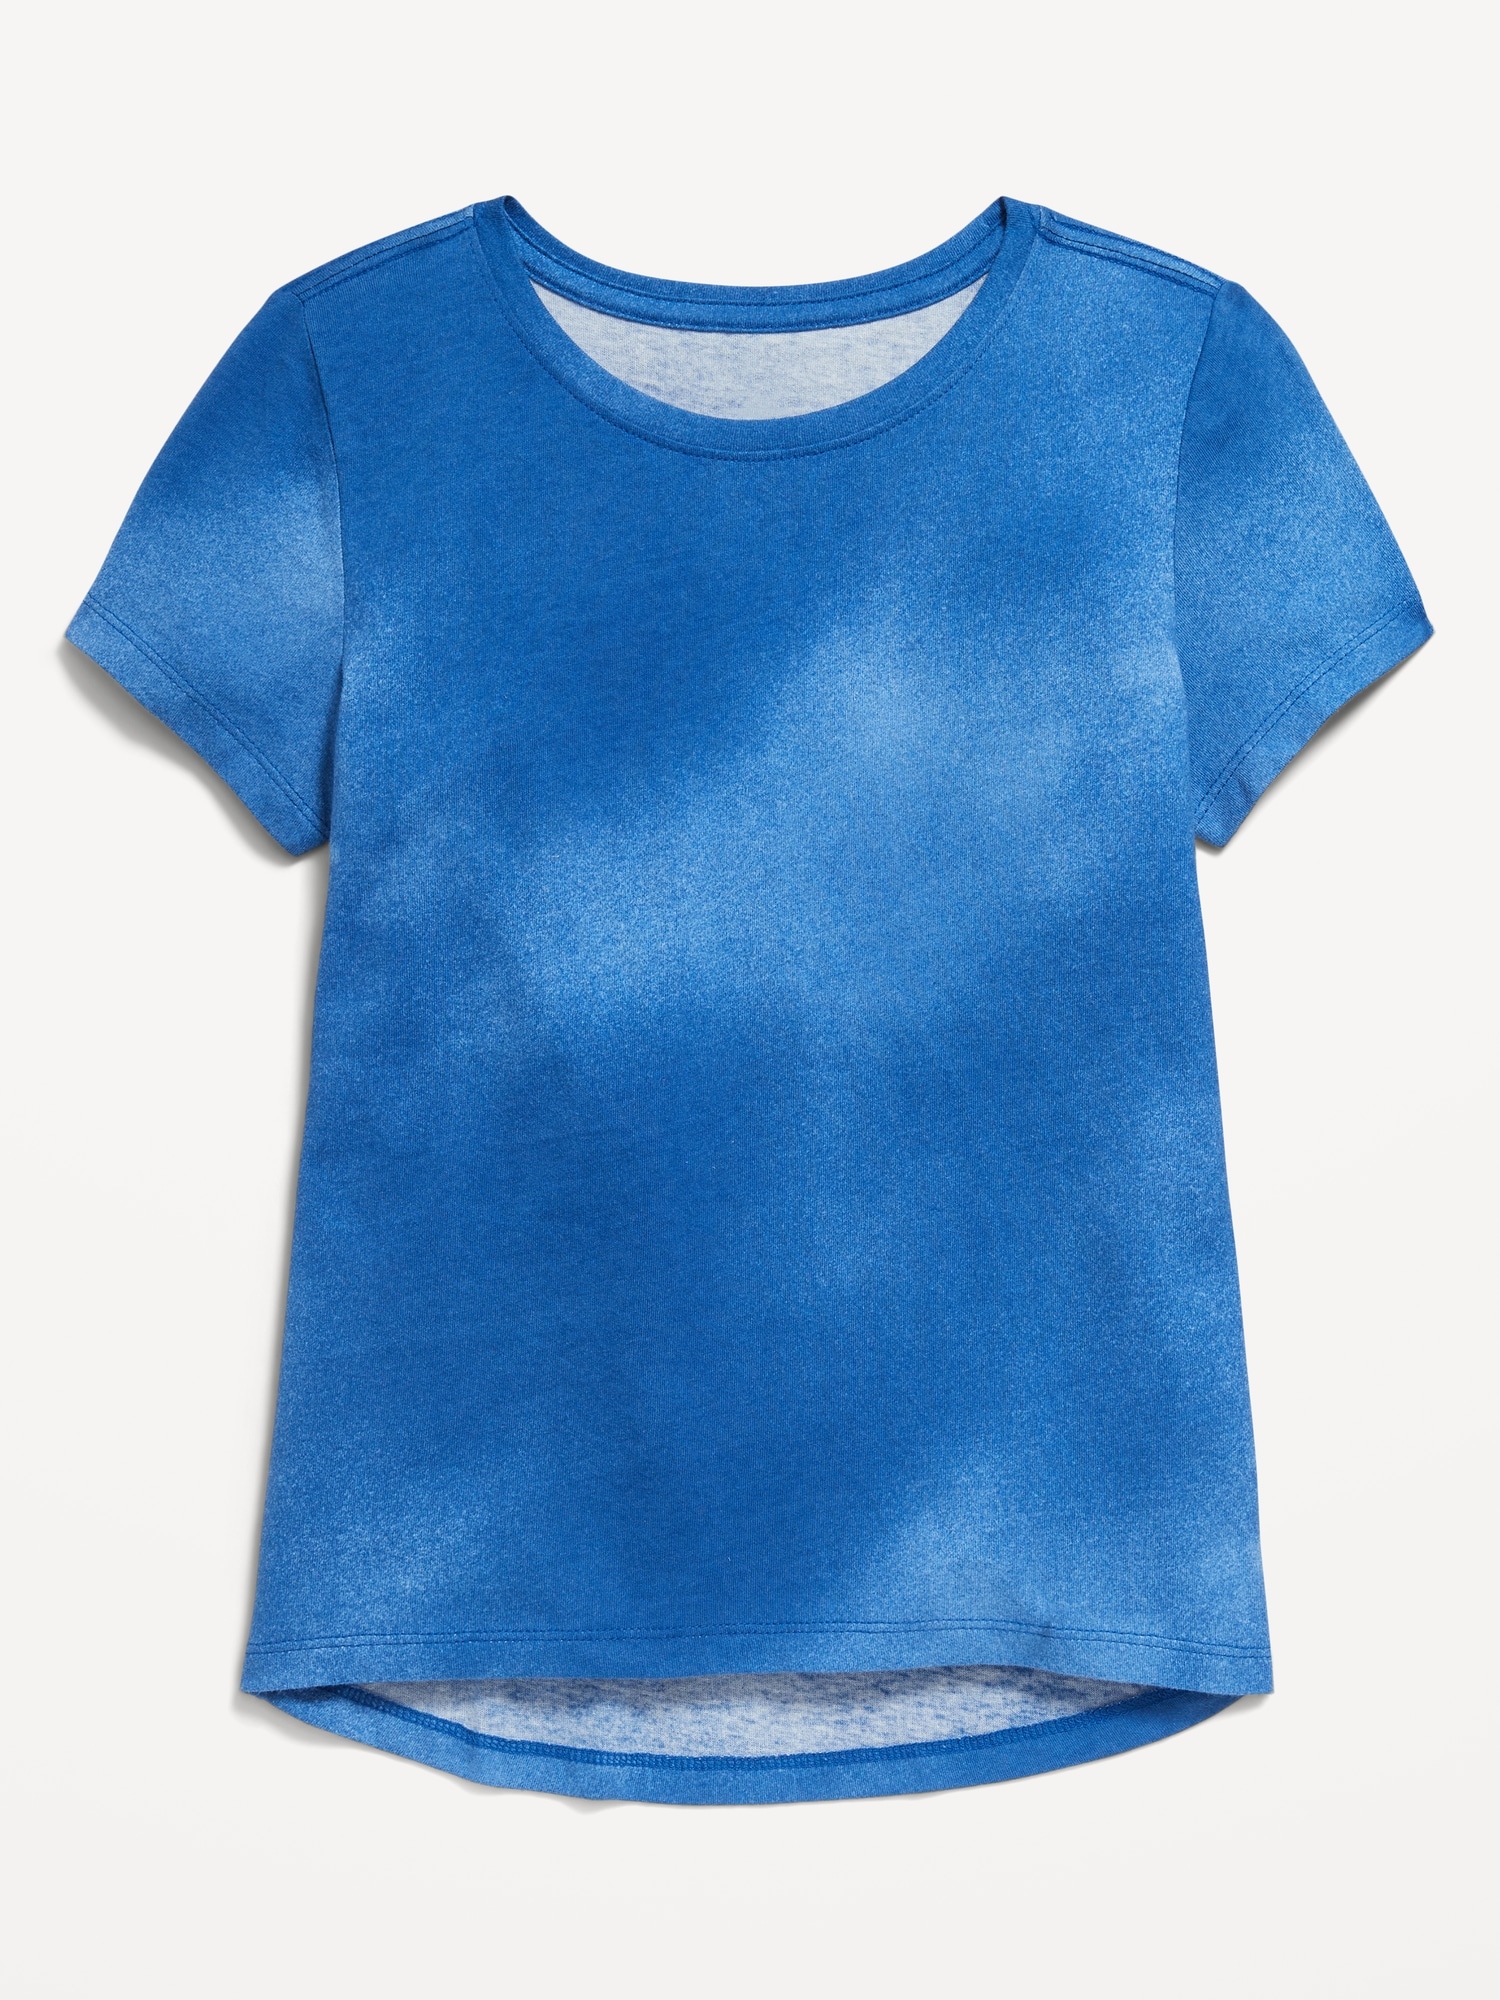 Softest Short-Sleeve T-Shirt for Girls